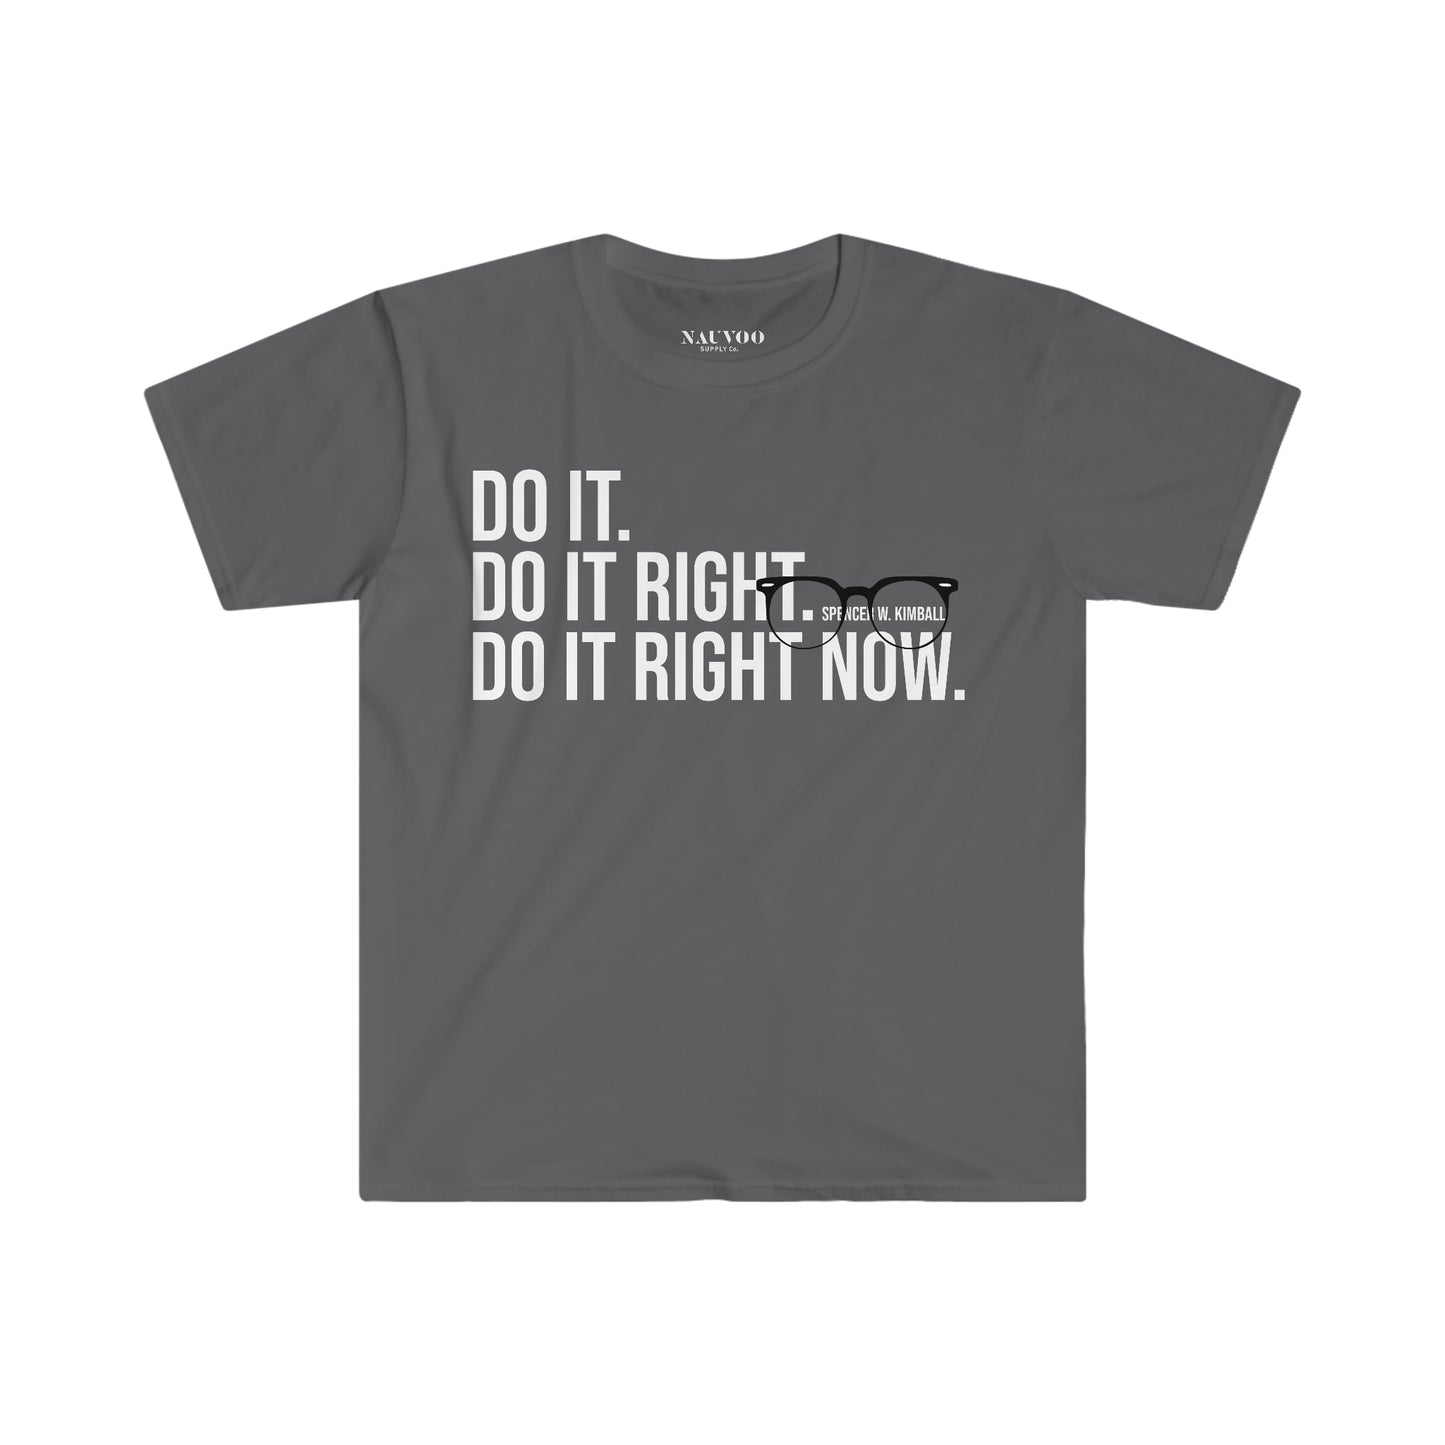 Men's Spencer W. Kimball “Do it” Shirt